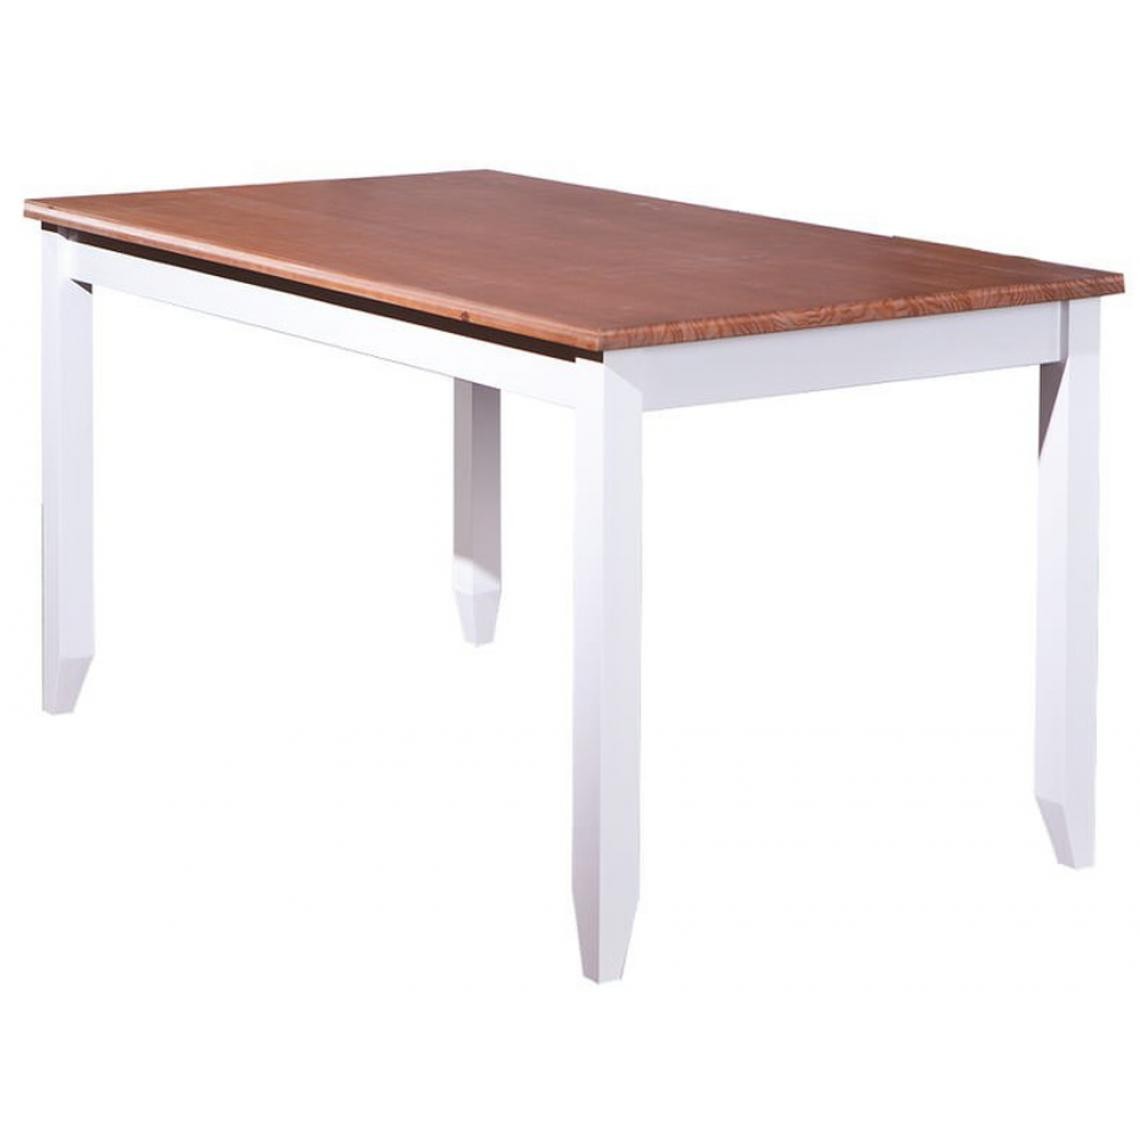 Pegane - Table à manger en bois massif - Dim : L 160 x P 90 x H 80 cm - Tables à manger